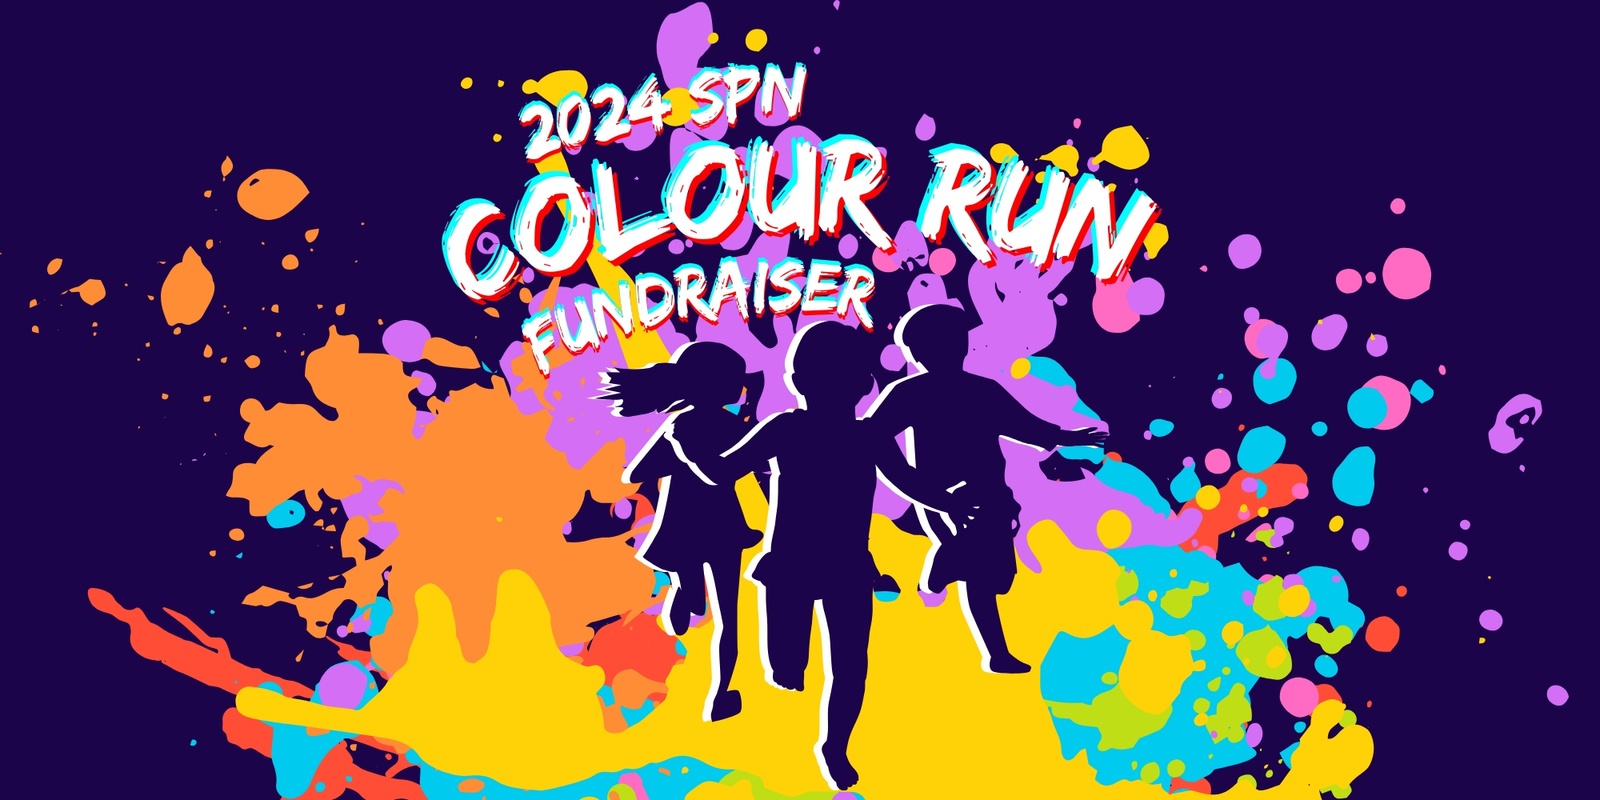 Banner image for 2024 SPN Colour Run 